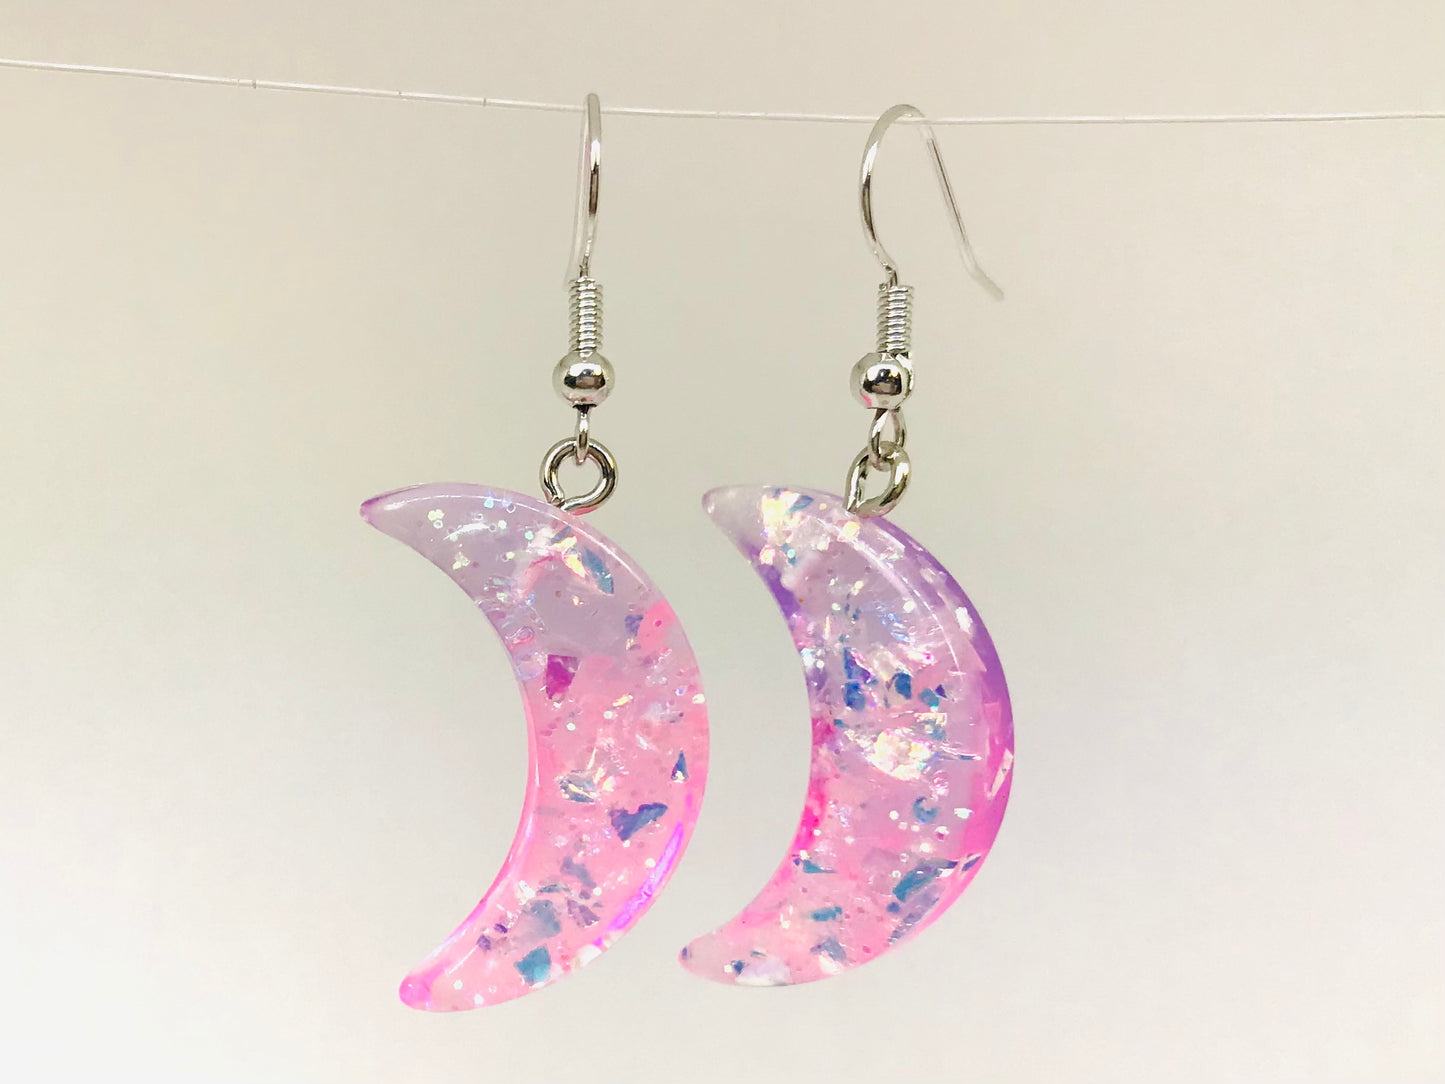 2 Pink Half Moon Earrings